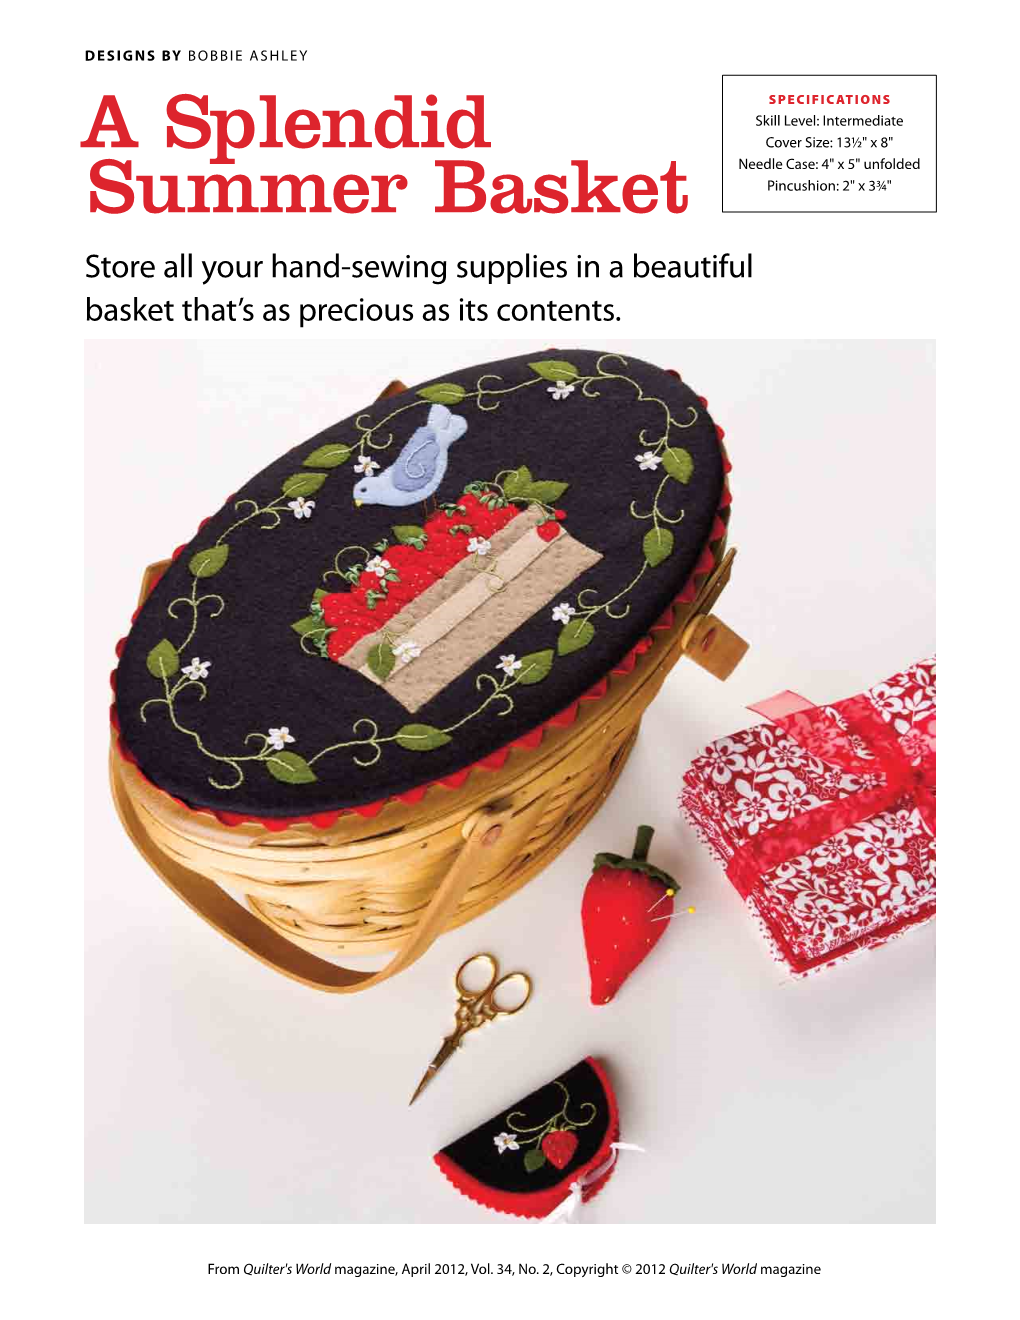 A Splendid Summer Basket Design, to Finish